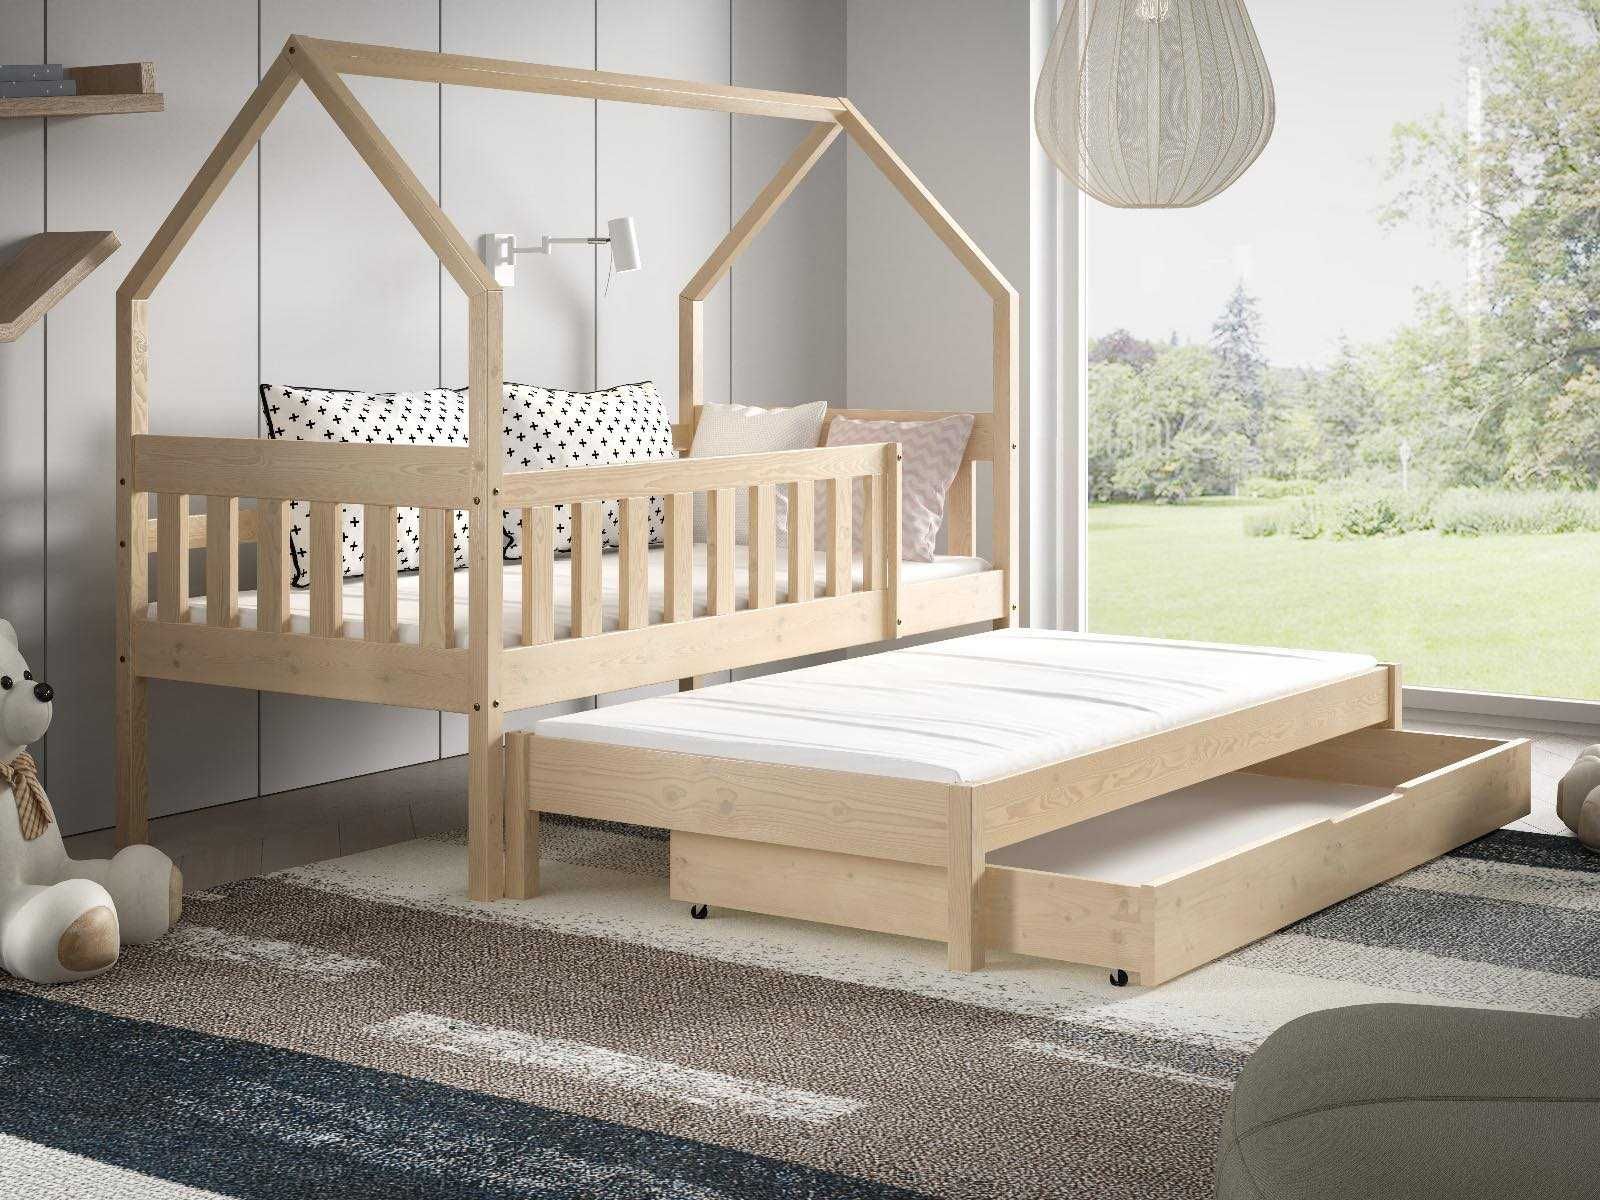 Drewniane łóżko domek LUNA 2-osobowe + materace w zestawie